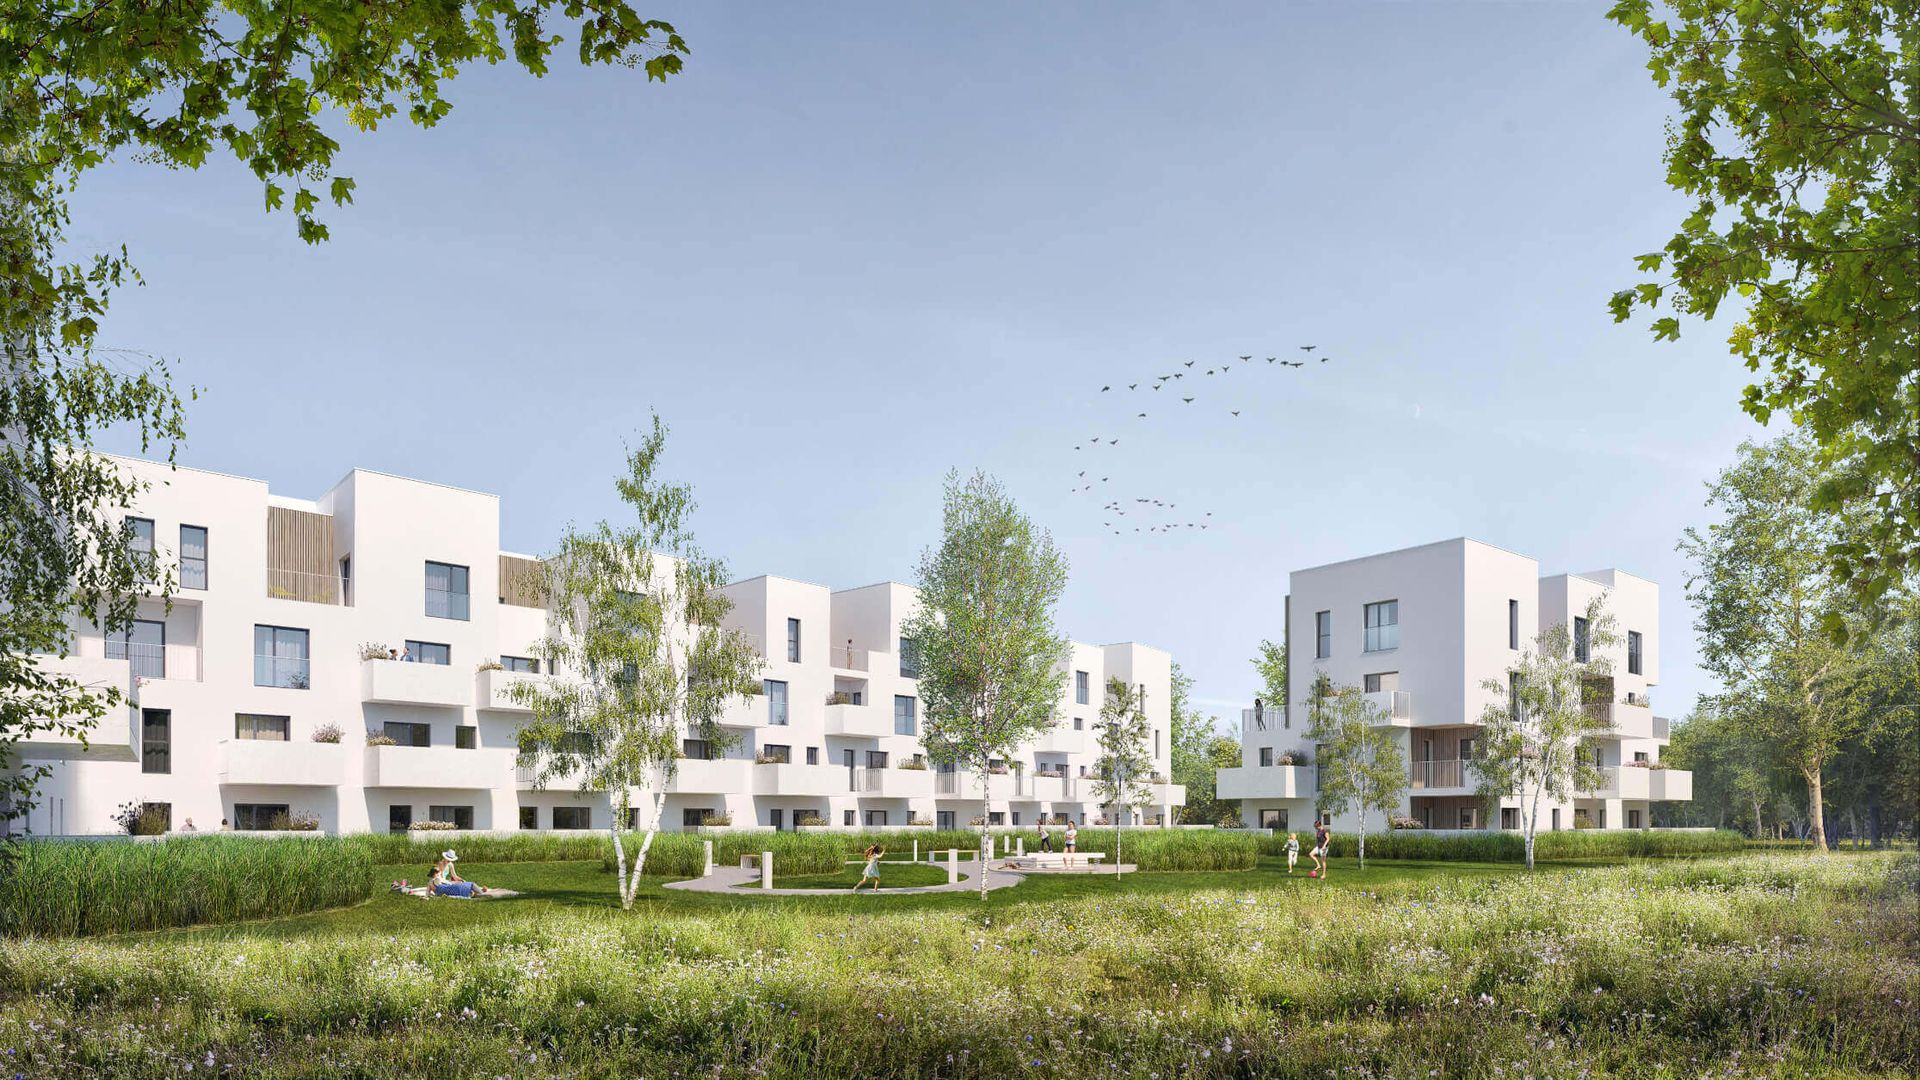 Wrocław: Niemiecki deweloper podaje szczegóły osiedla na Wielkiej Wyspie. Zbuduje prawie 300 mieszkań 